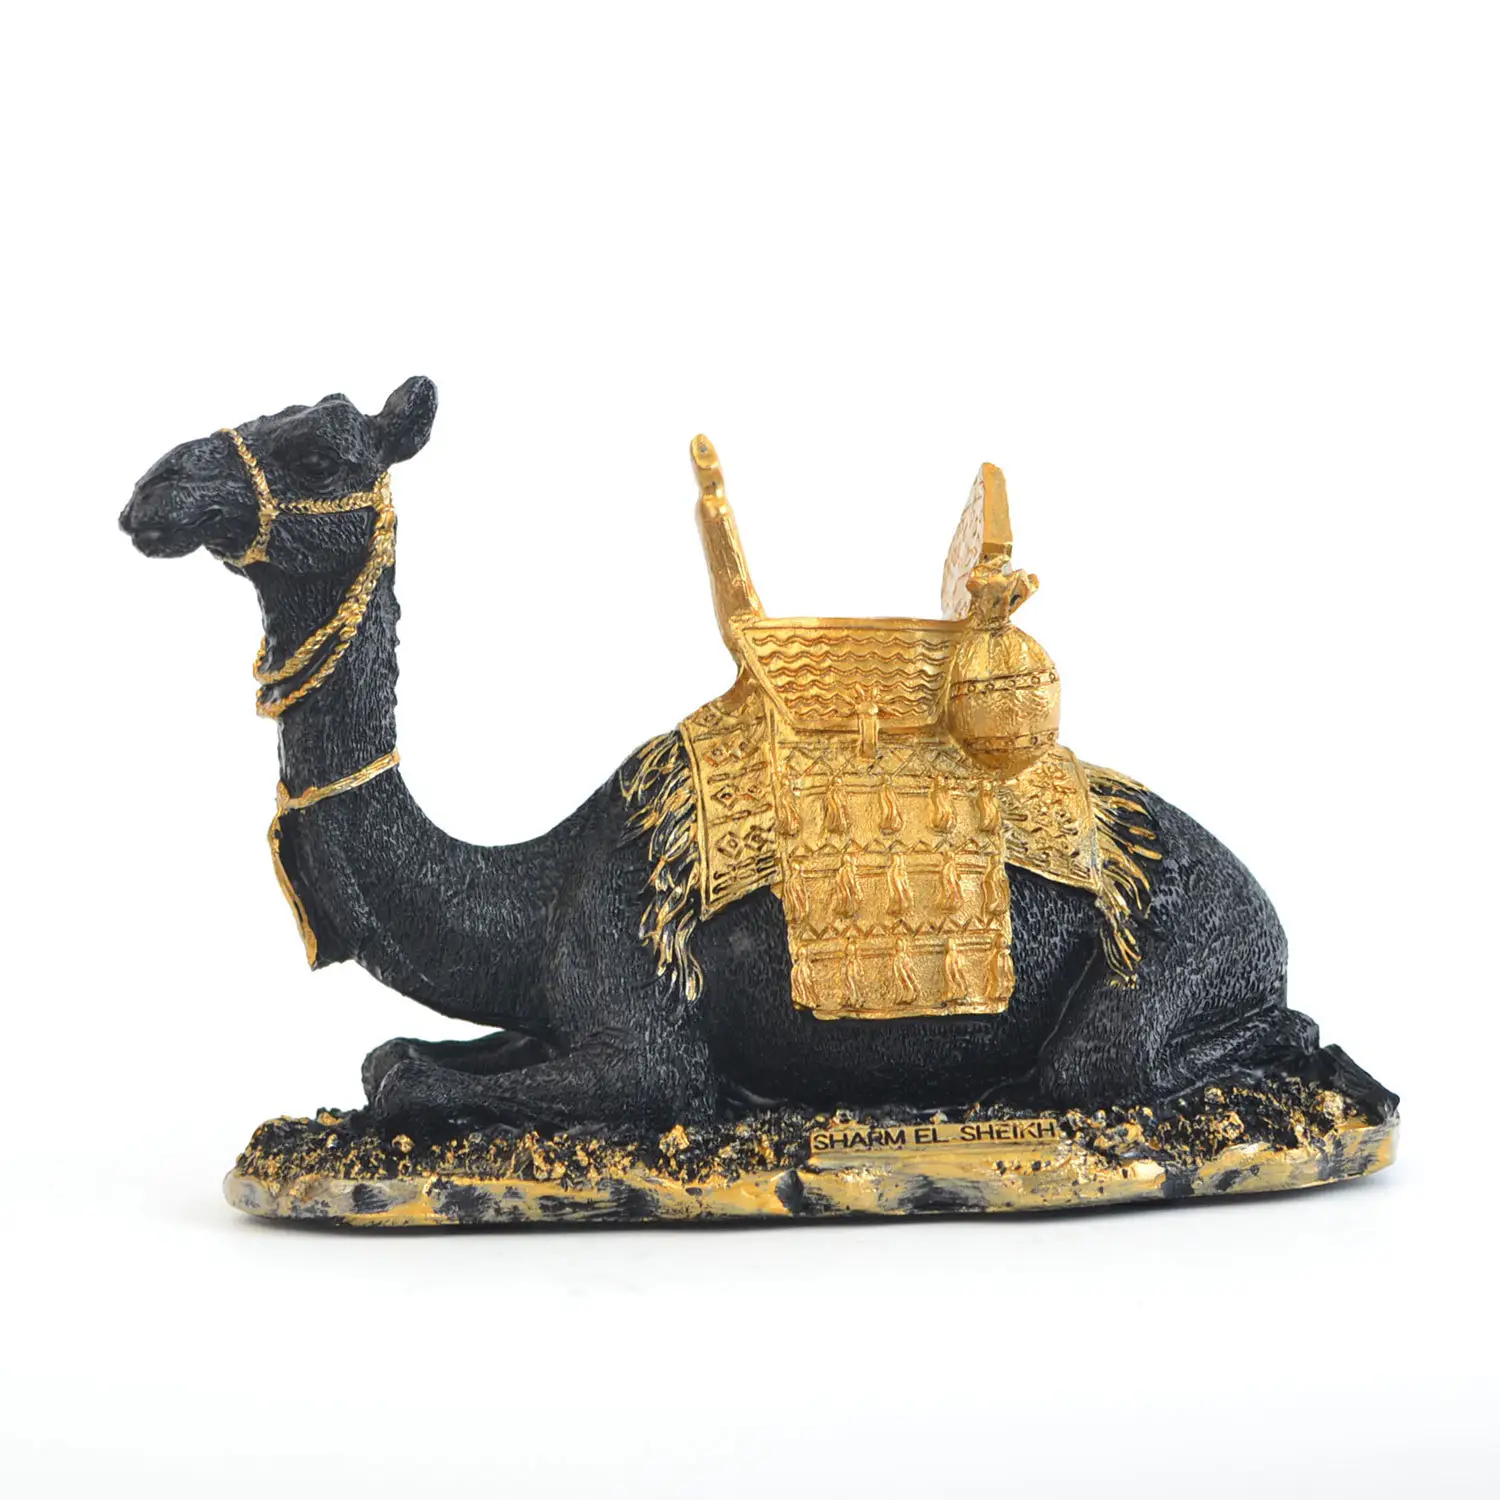 Middle East Dubai Travel Souvenir Desert Camel Home Decor Collection Resin Crafts Resin Camel